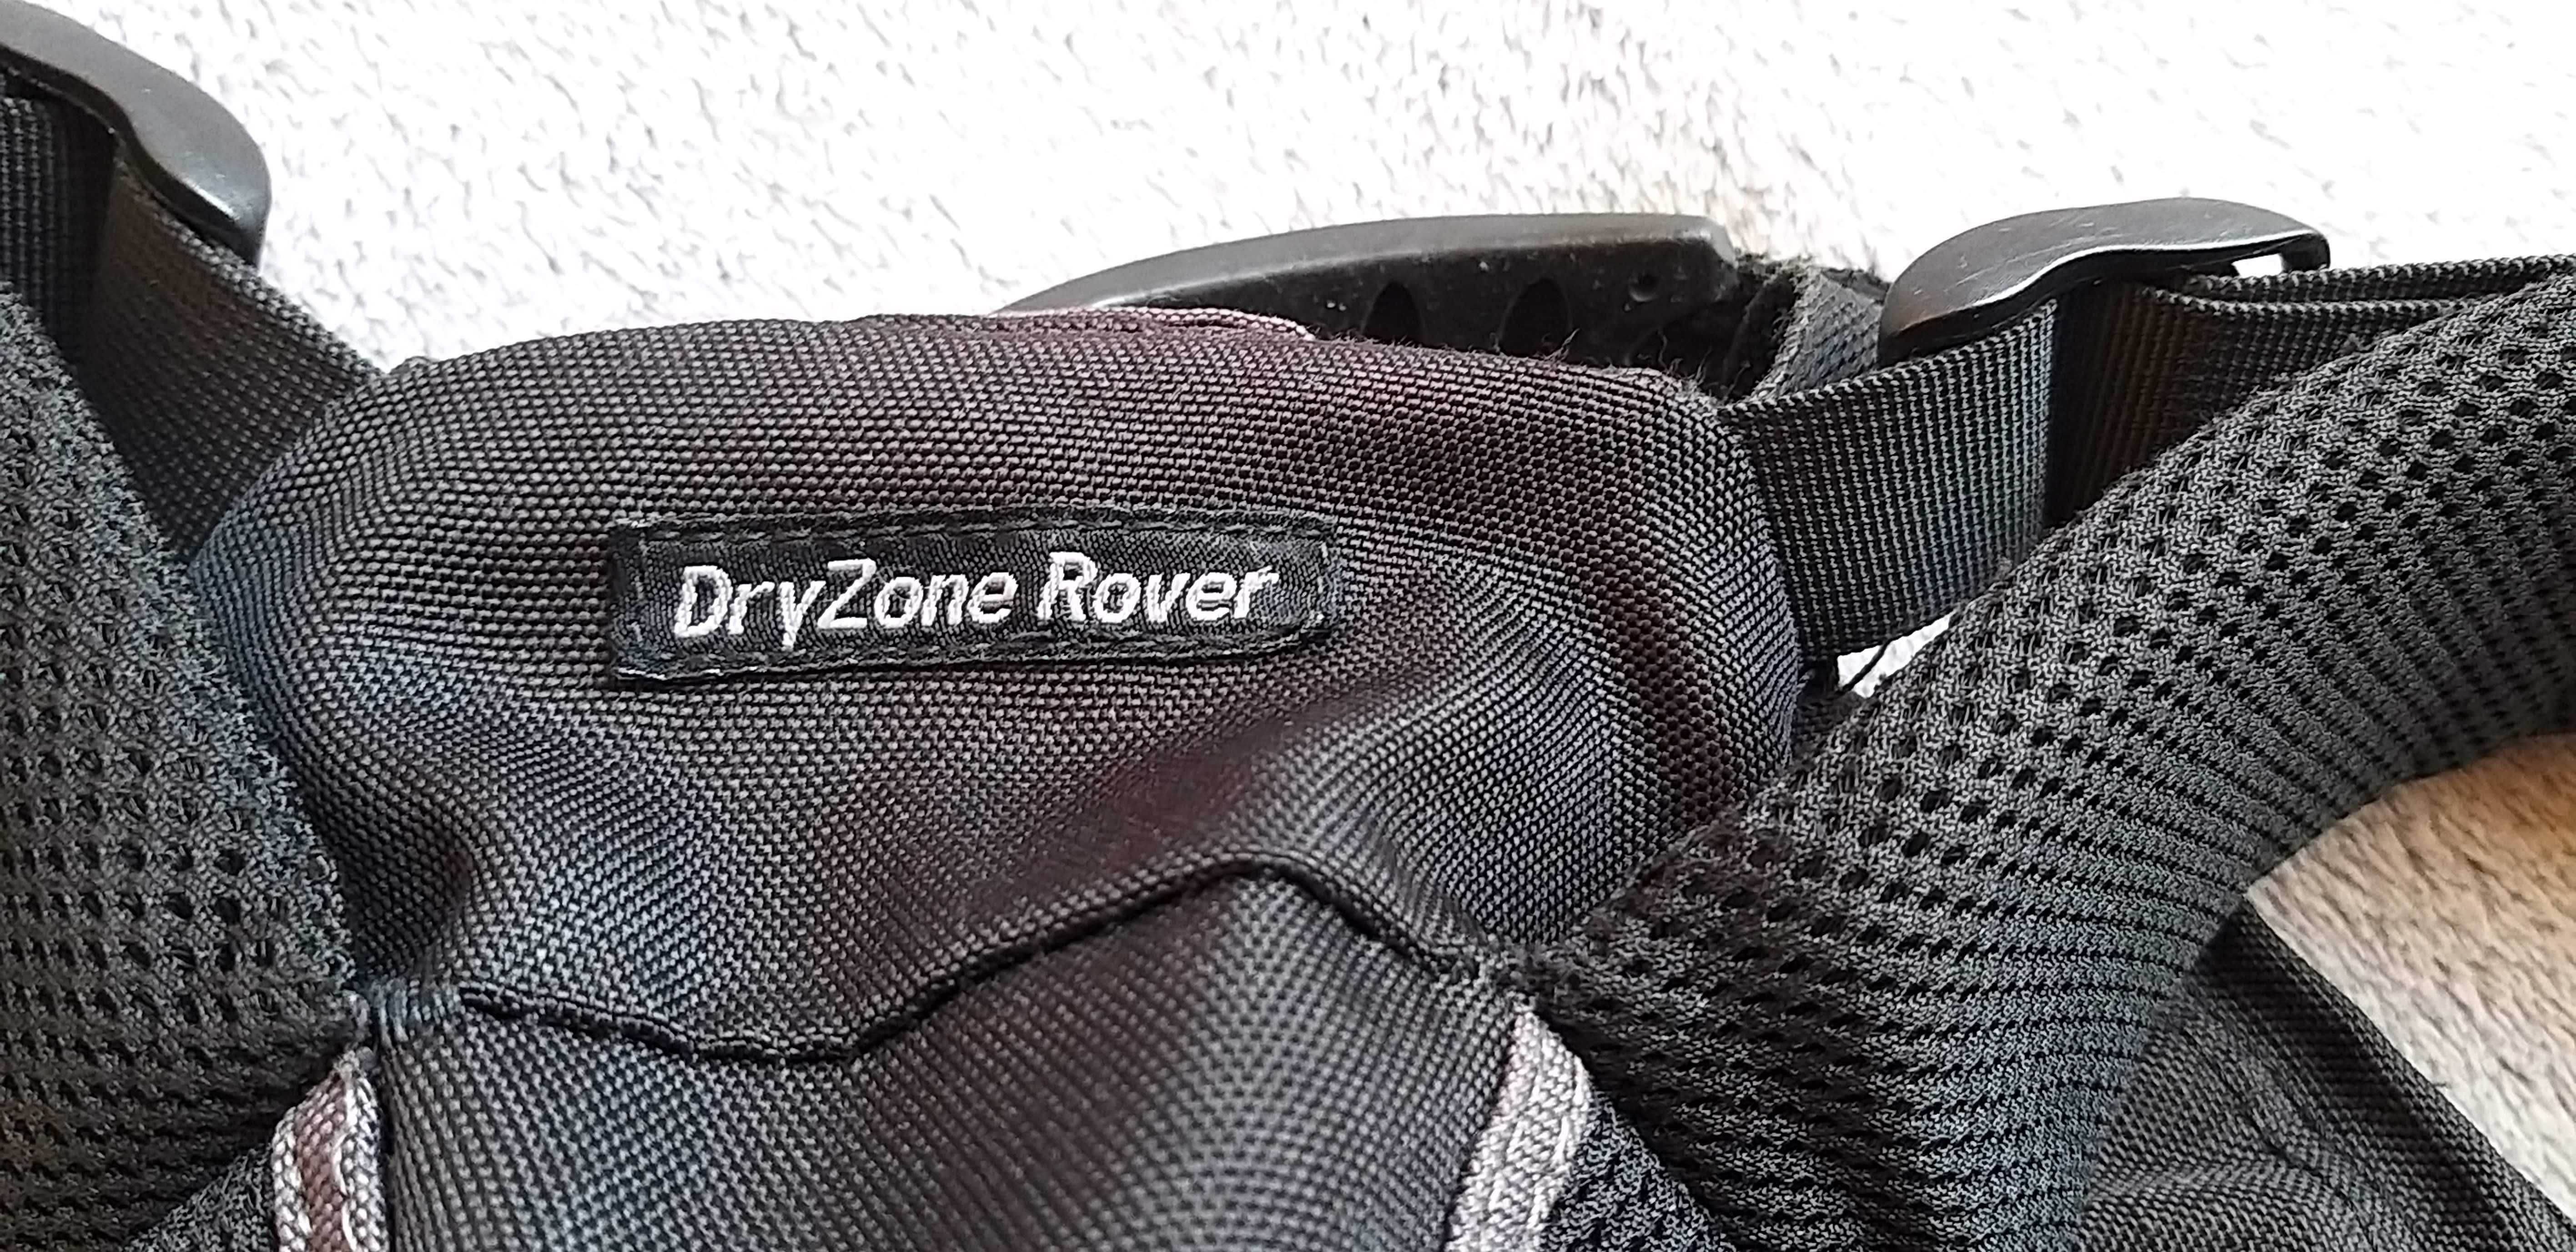 Фото раница Lowepro DryZone rover